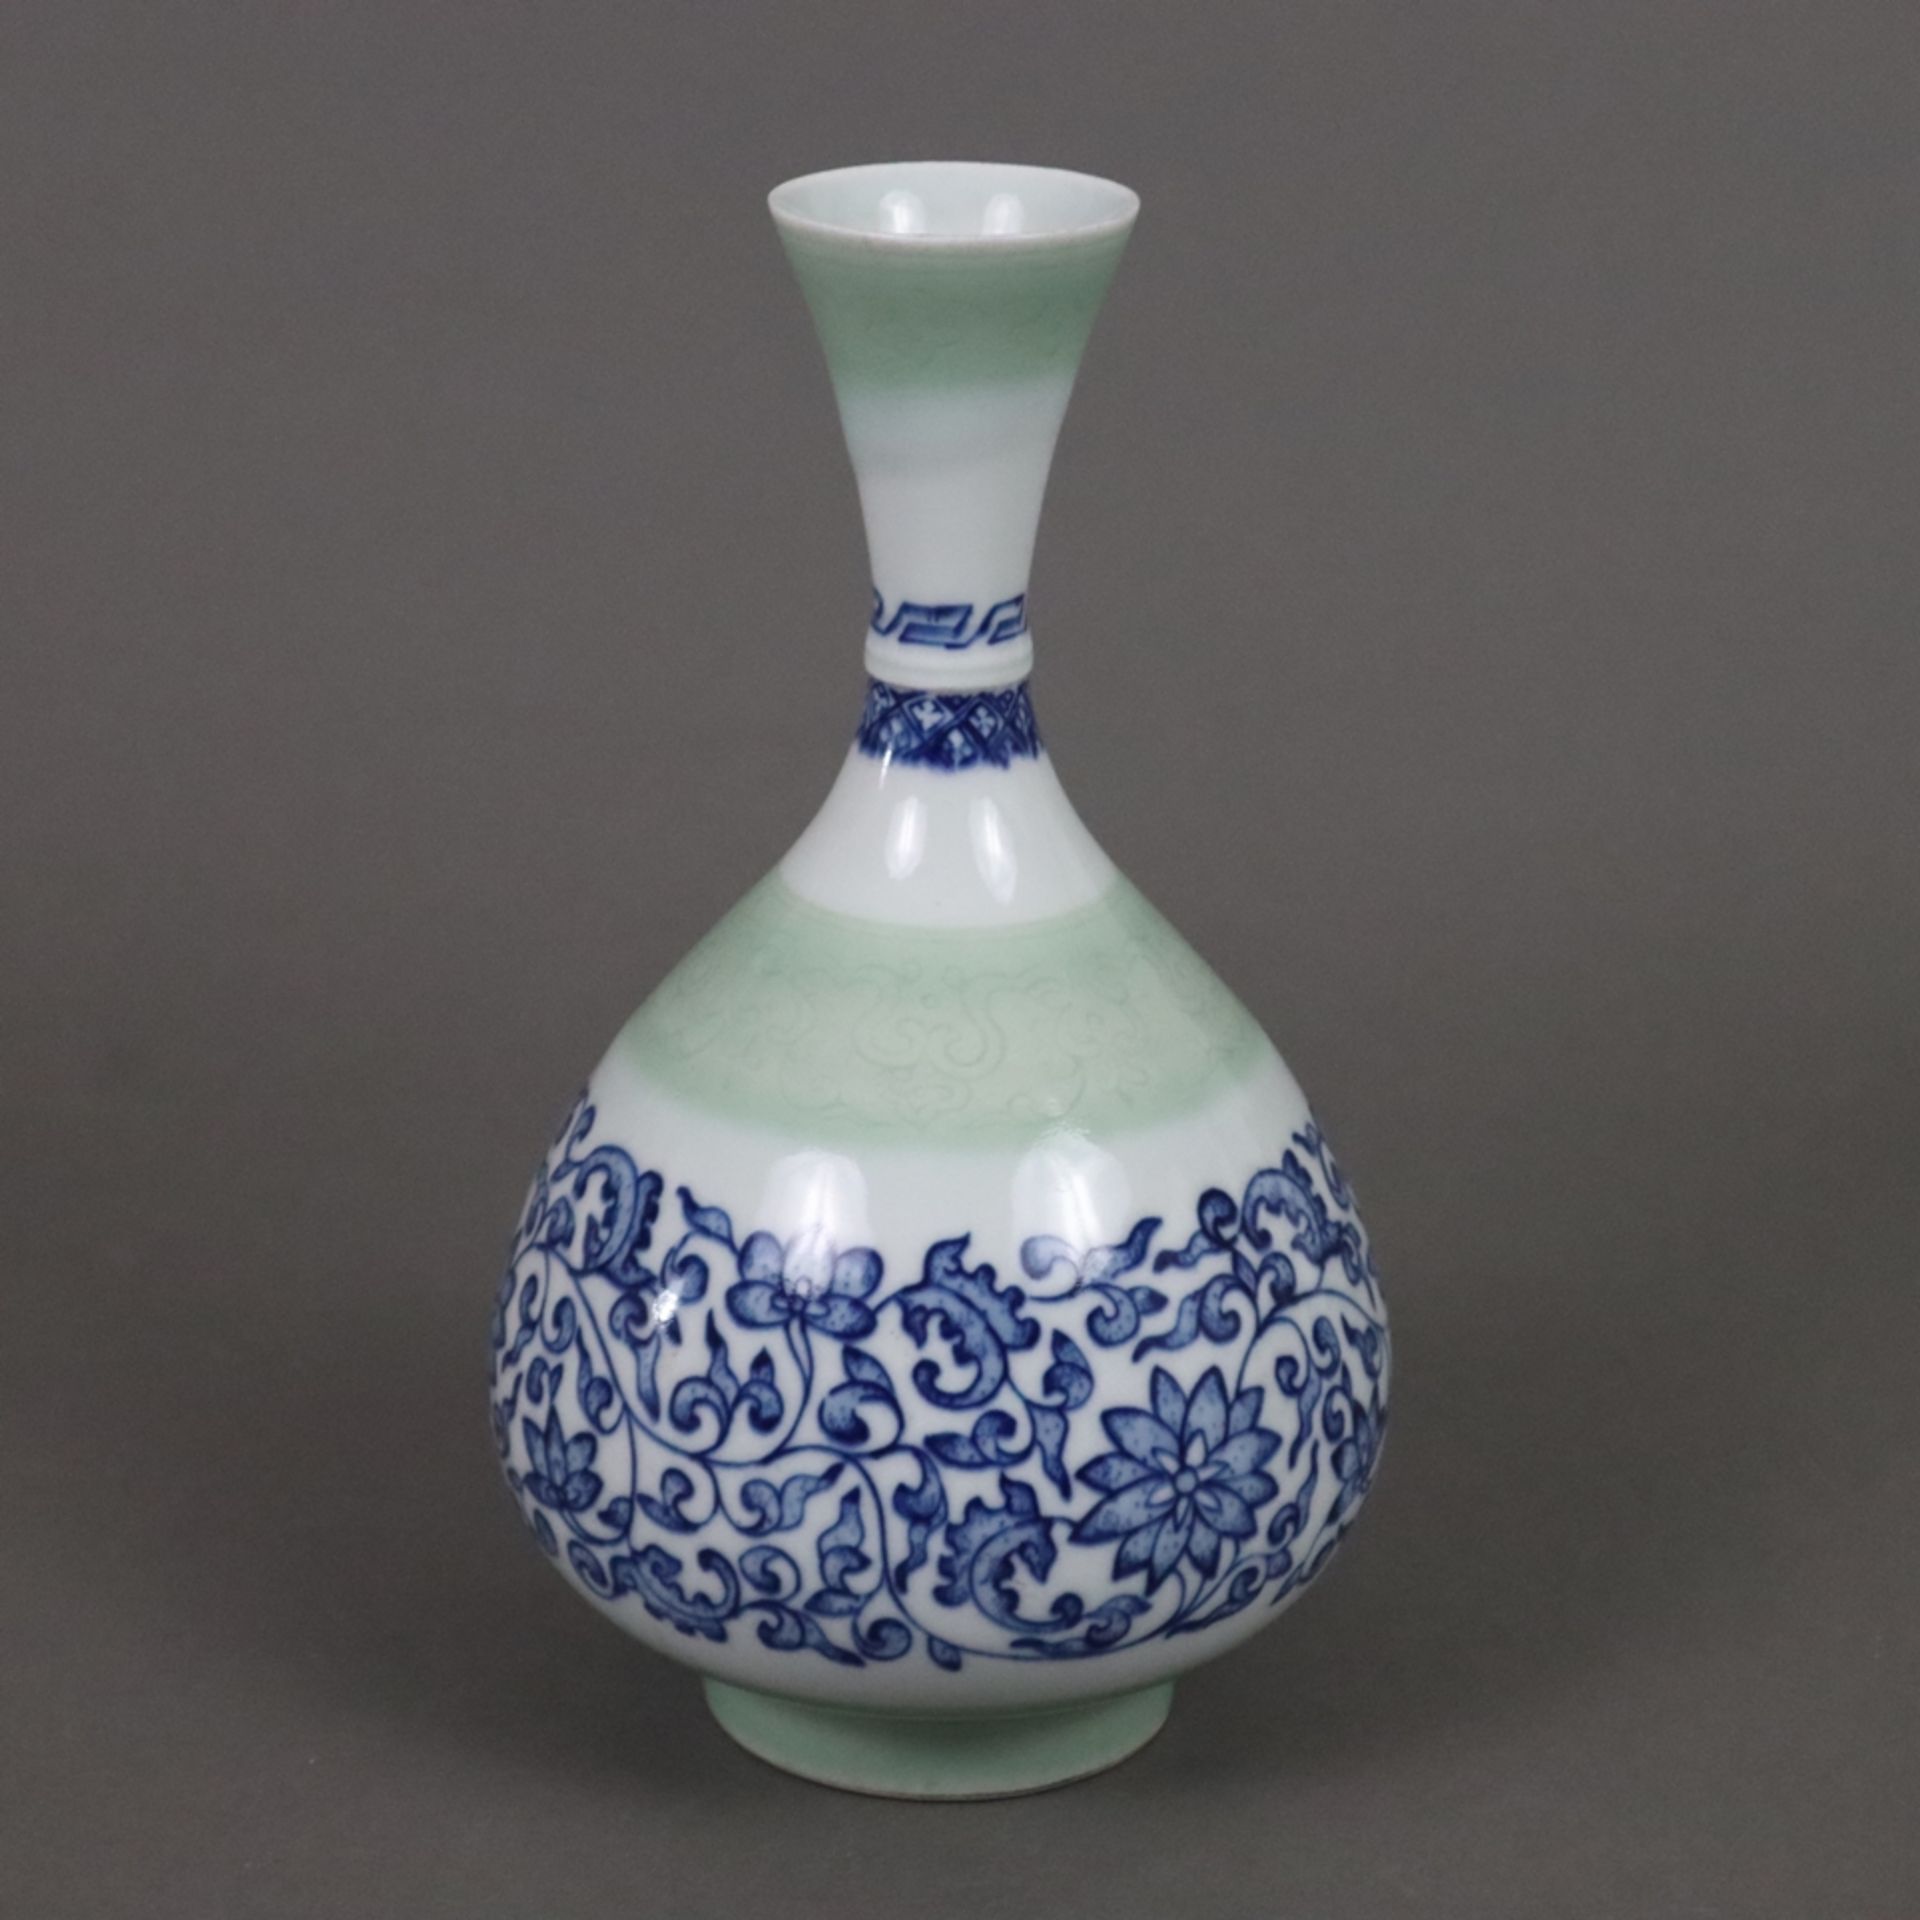 Flaschenvase - China, vom Typ „Yuhuchun“, zierliche blau-weiße Porzellanvase mit birnenförmigem Kör